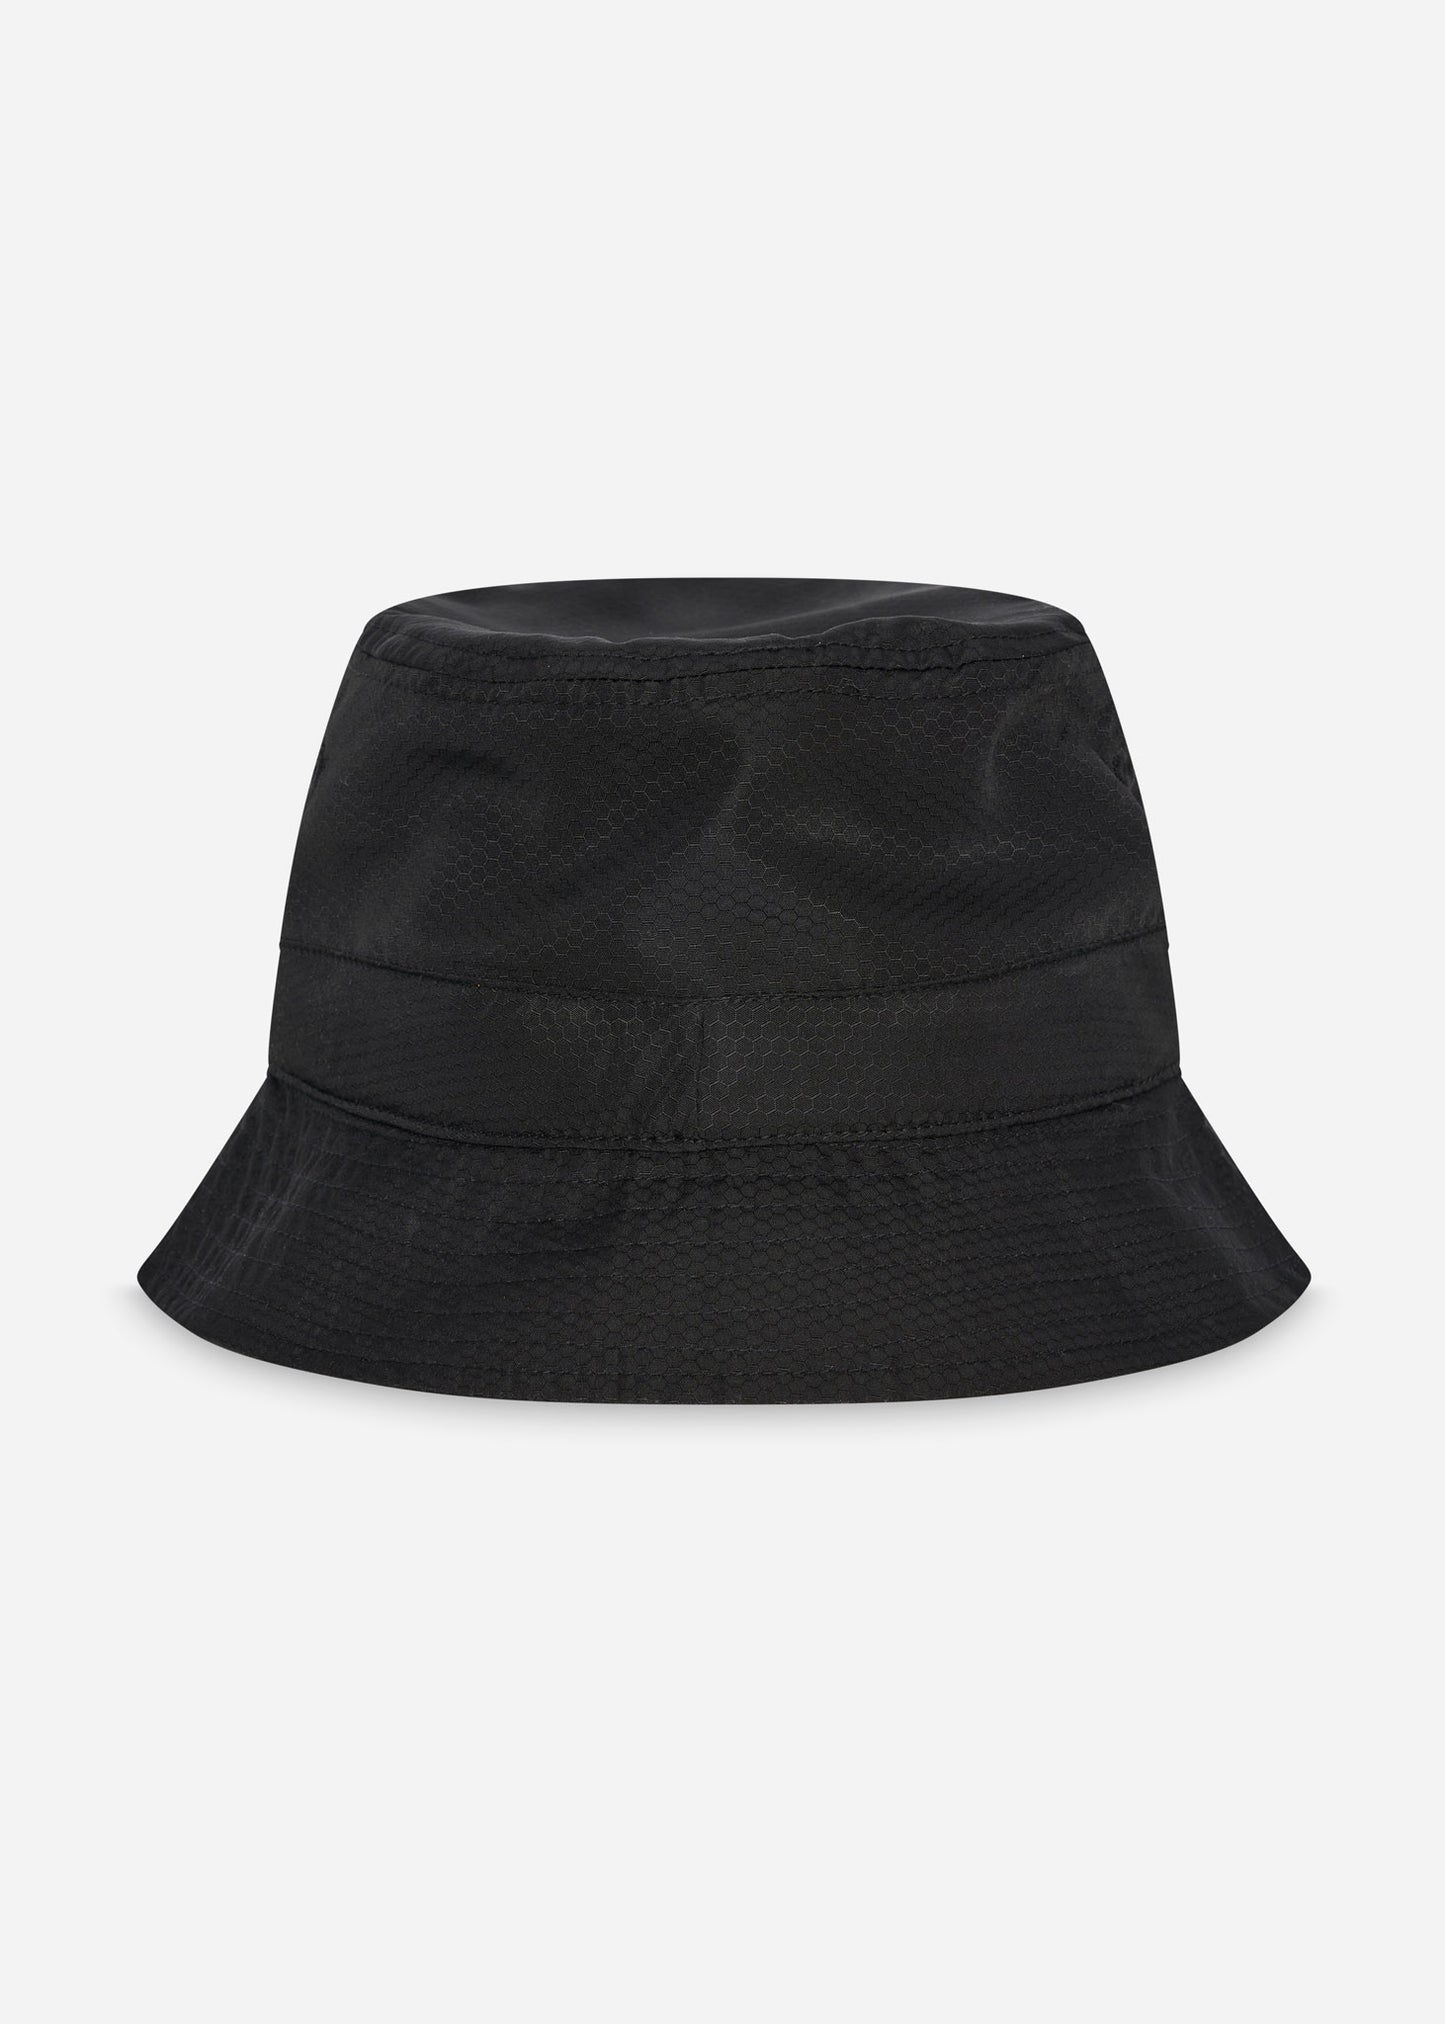 Impeller sports hat - black - Barbour International